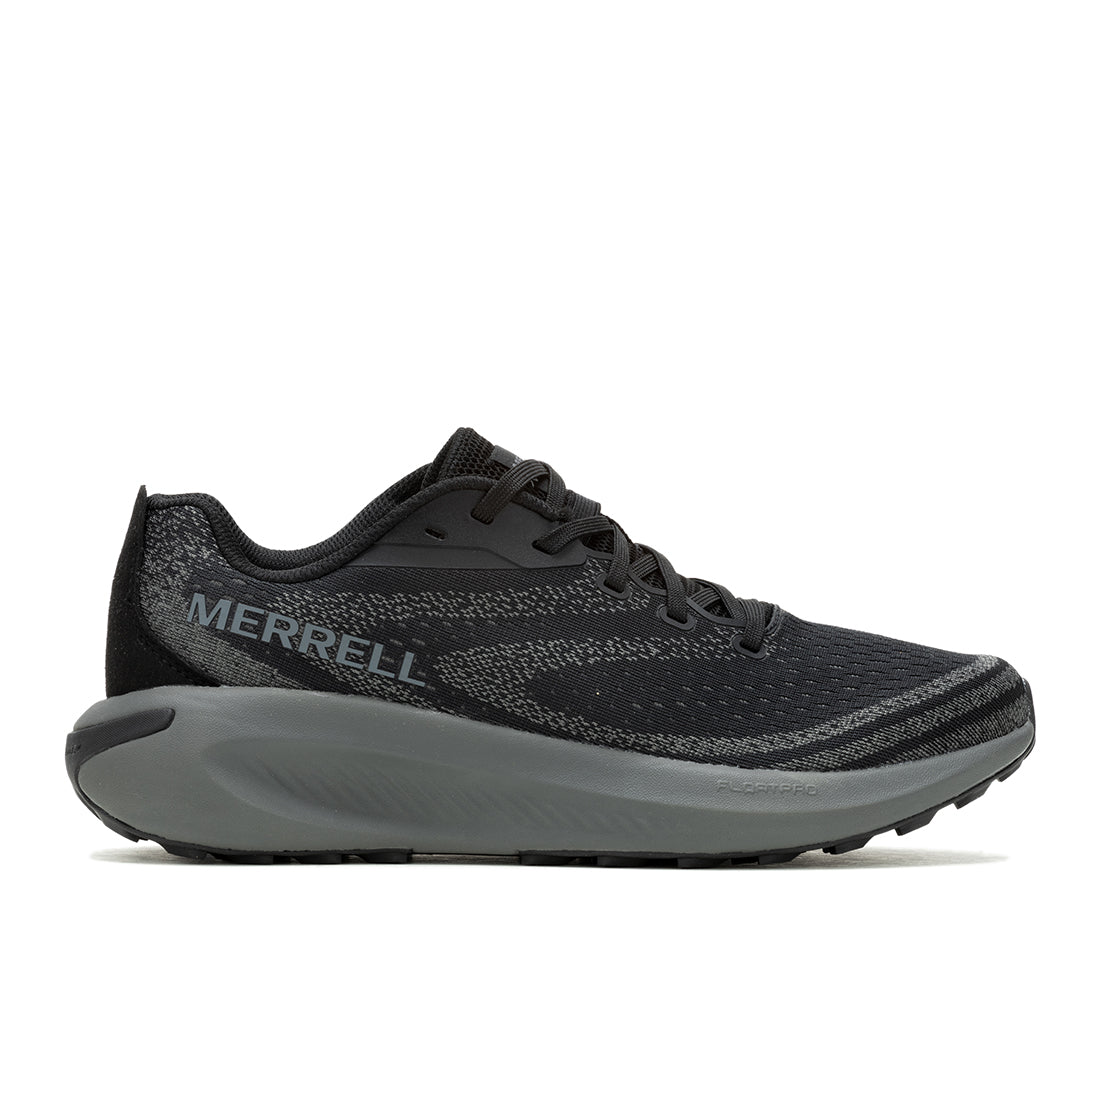 Morphlite - Black/Asphalt Mens Trail Running Shoes